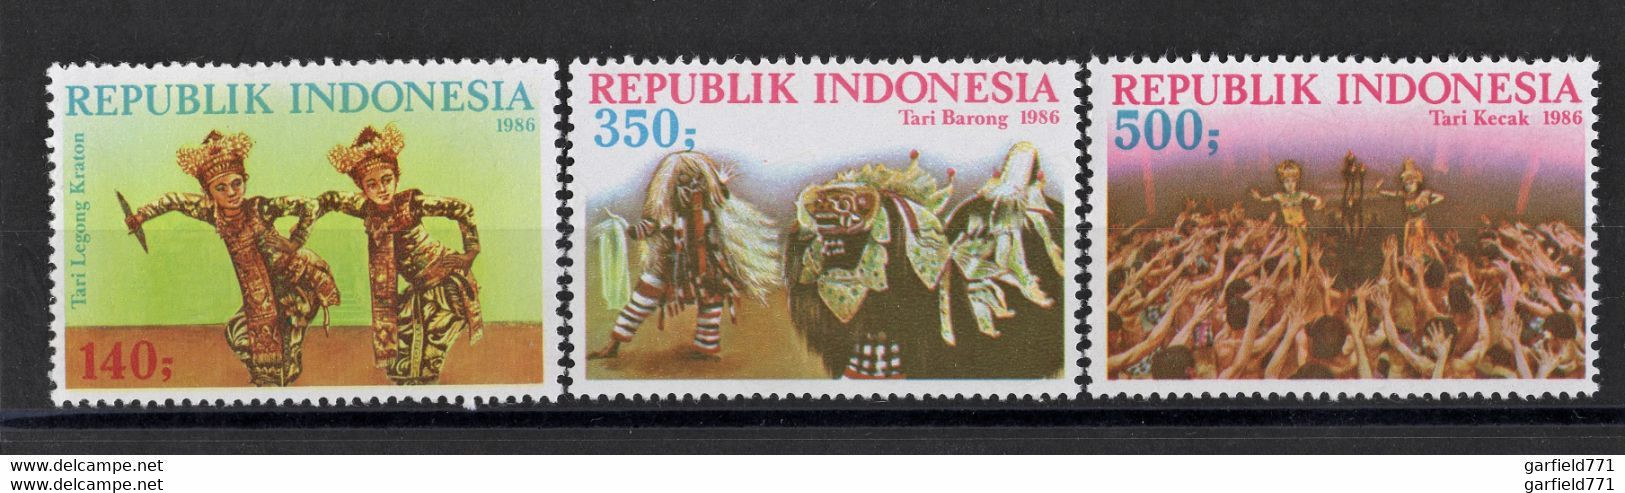 INDONESIE 1986 - Tari Lekong Kraton Tari Barong Tari Kecak LOT N°1267 1268 1269 NEUF** MNH ! - Indonesia